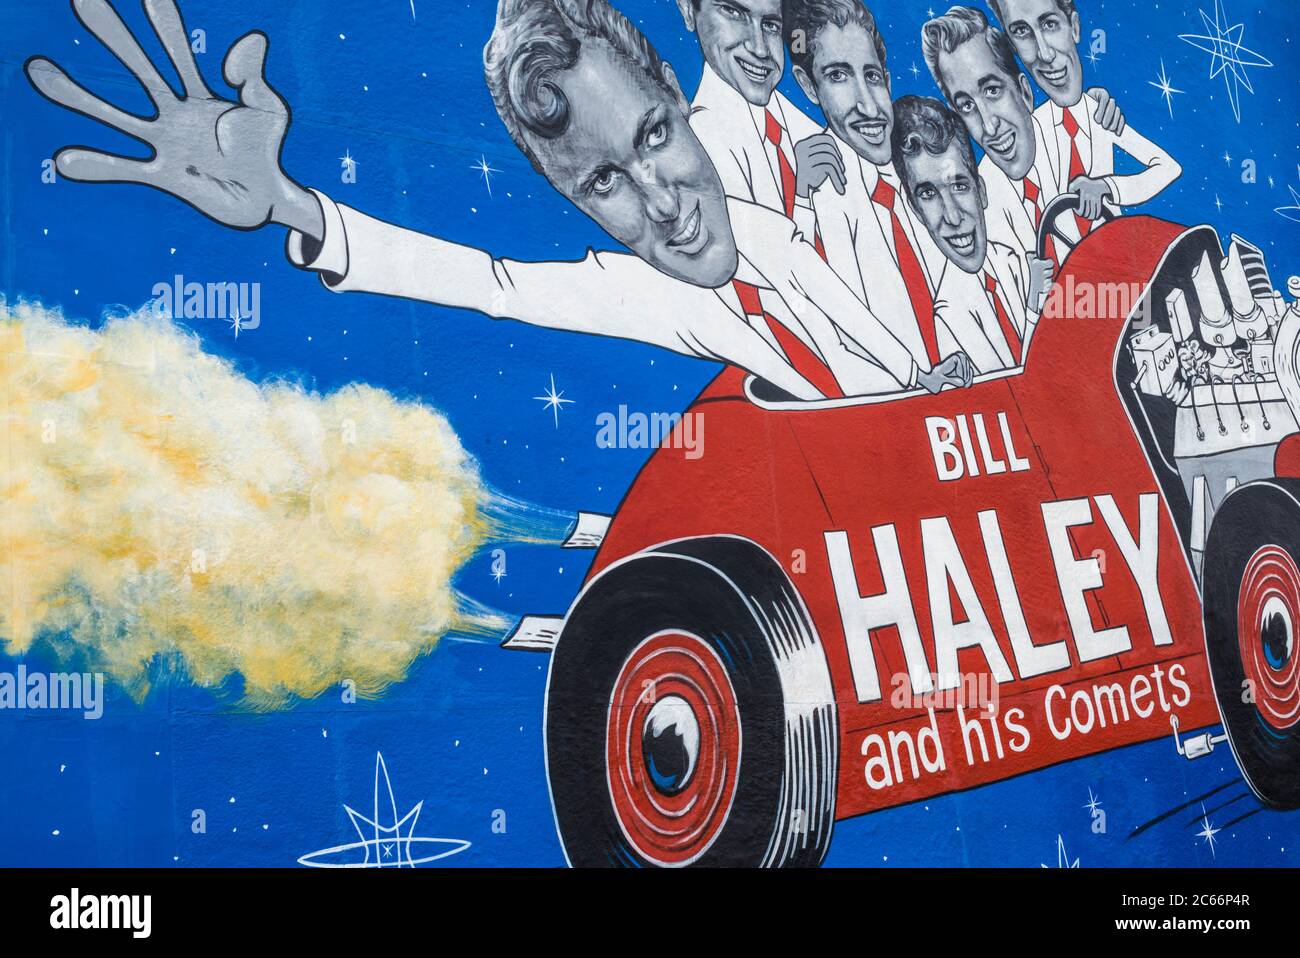 Stati Uniti d'America, New Jersey, il Jersey Shore, Wildwoods, anni cinquanta degli anni sessanta rock and roll storia, murale per Bill Haley e le sue comete Foto Stock